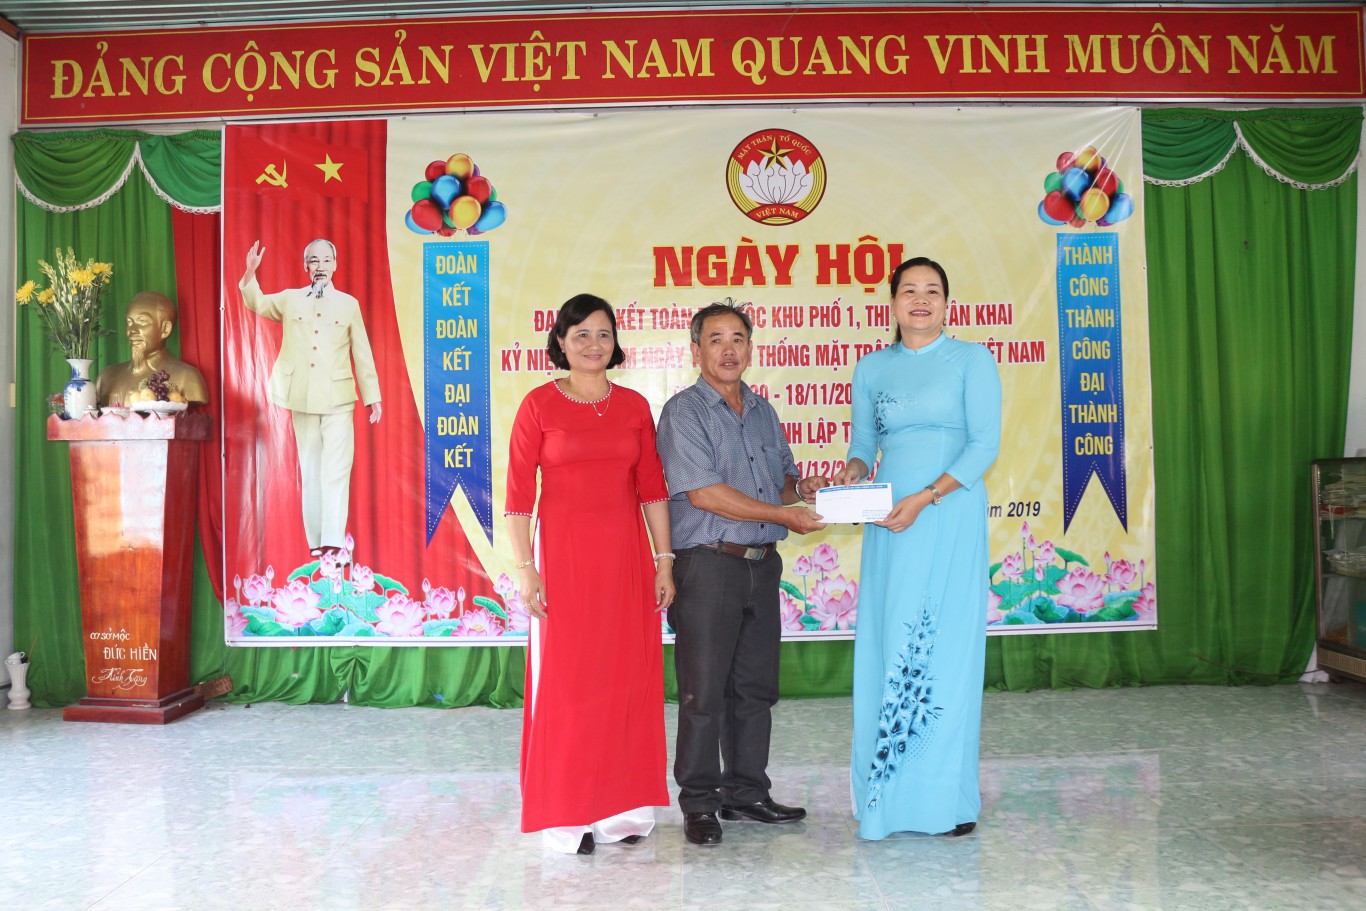 Bà Trịnh Thanh Triều, Ủy viên BTV, Trưởng Ban dân vận, Chủ tịch UBMTTQVN huyện chung vui và có phần quà tặng khu phố 1 nhân ngày hội.